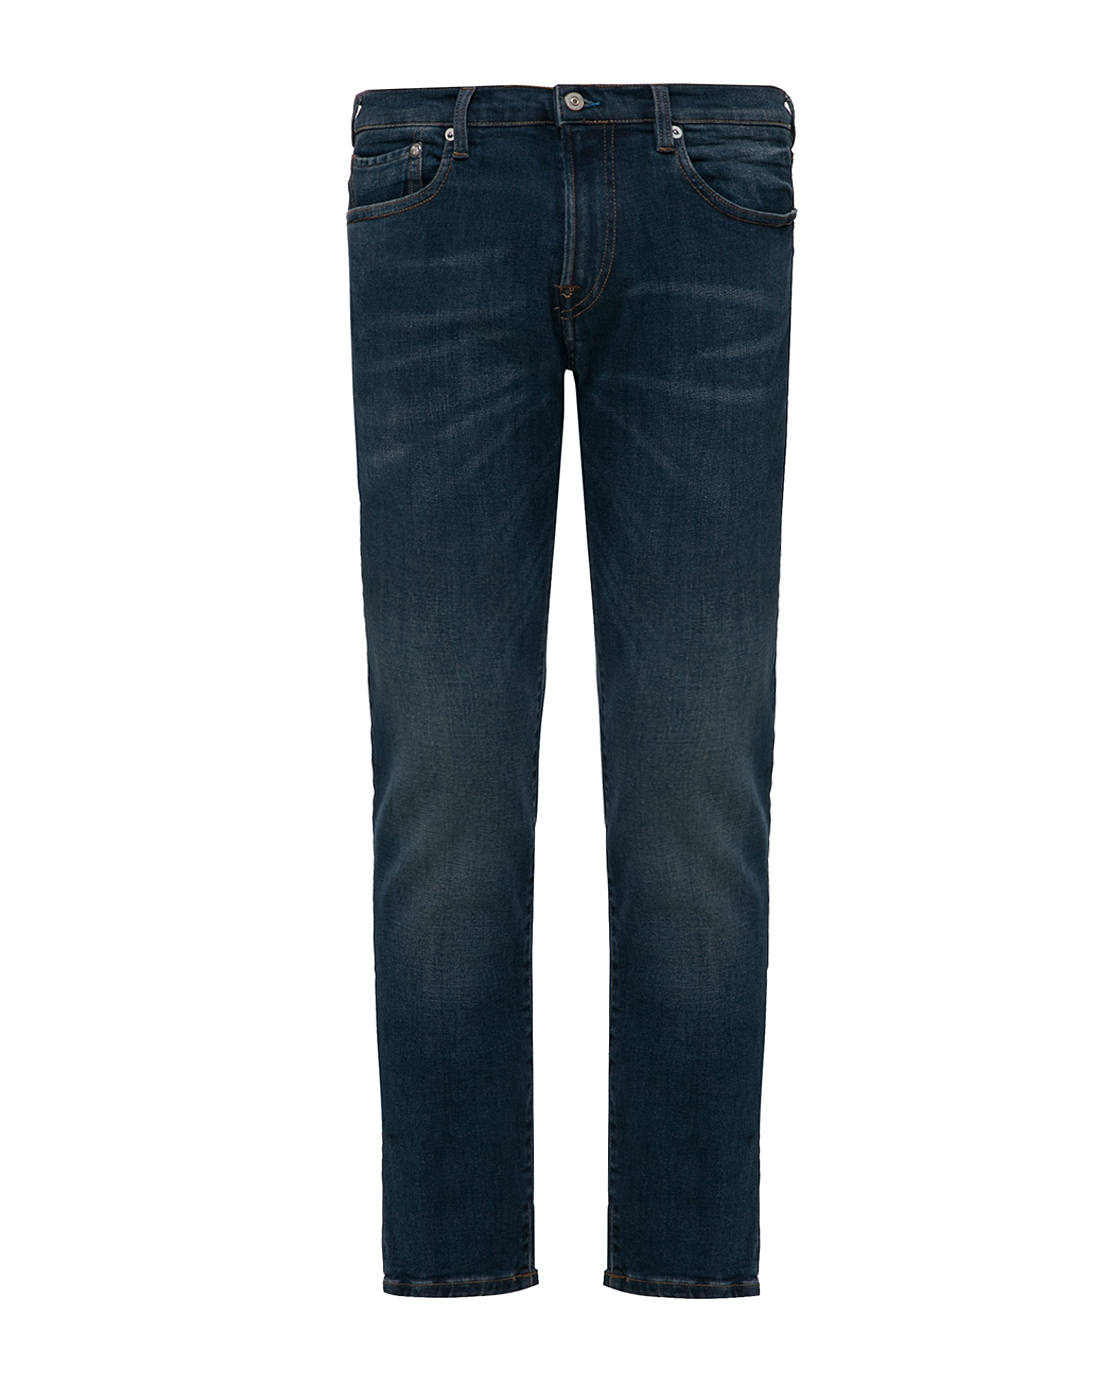 Мужские синие джинсы Slim Standard Paul Smith SM2R-200ZW-C20222-1